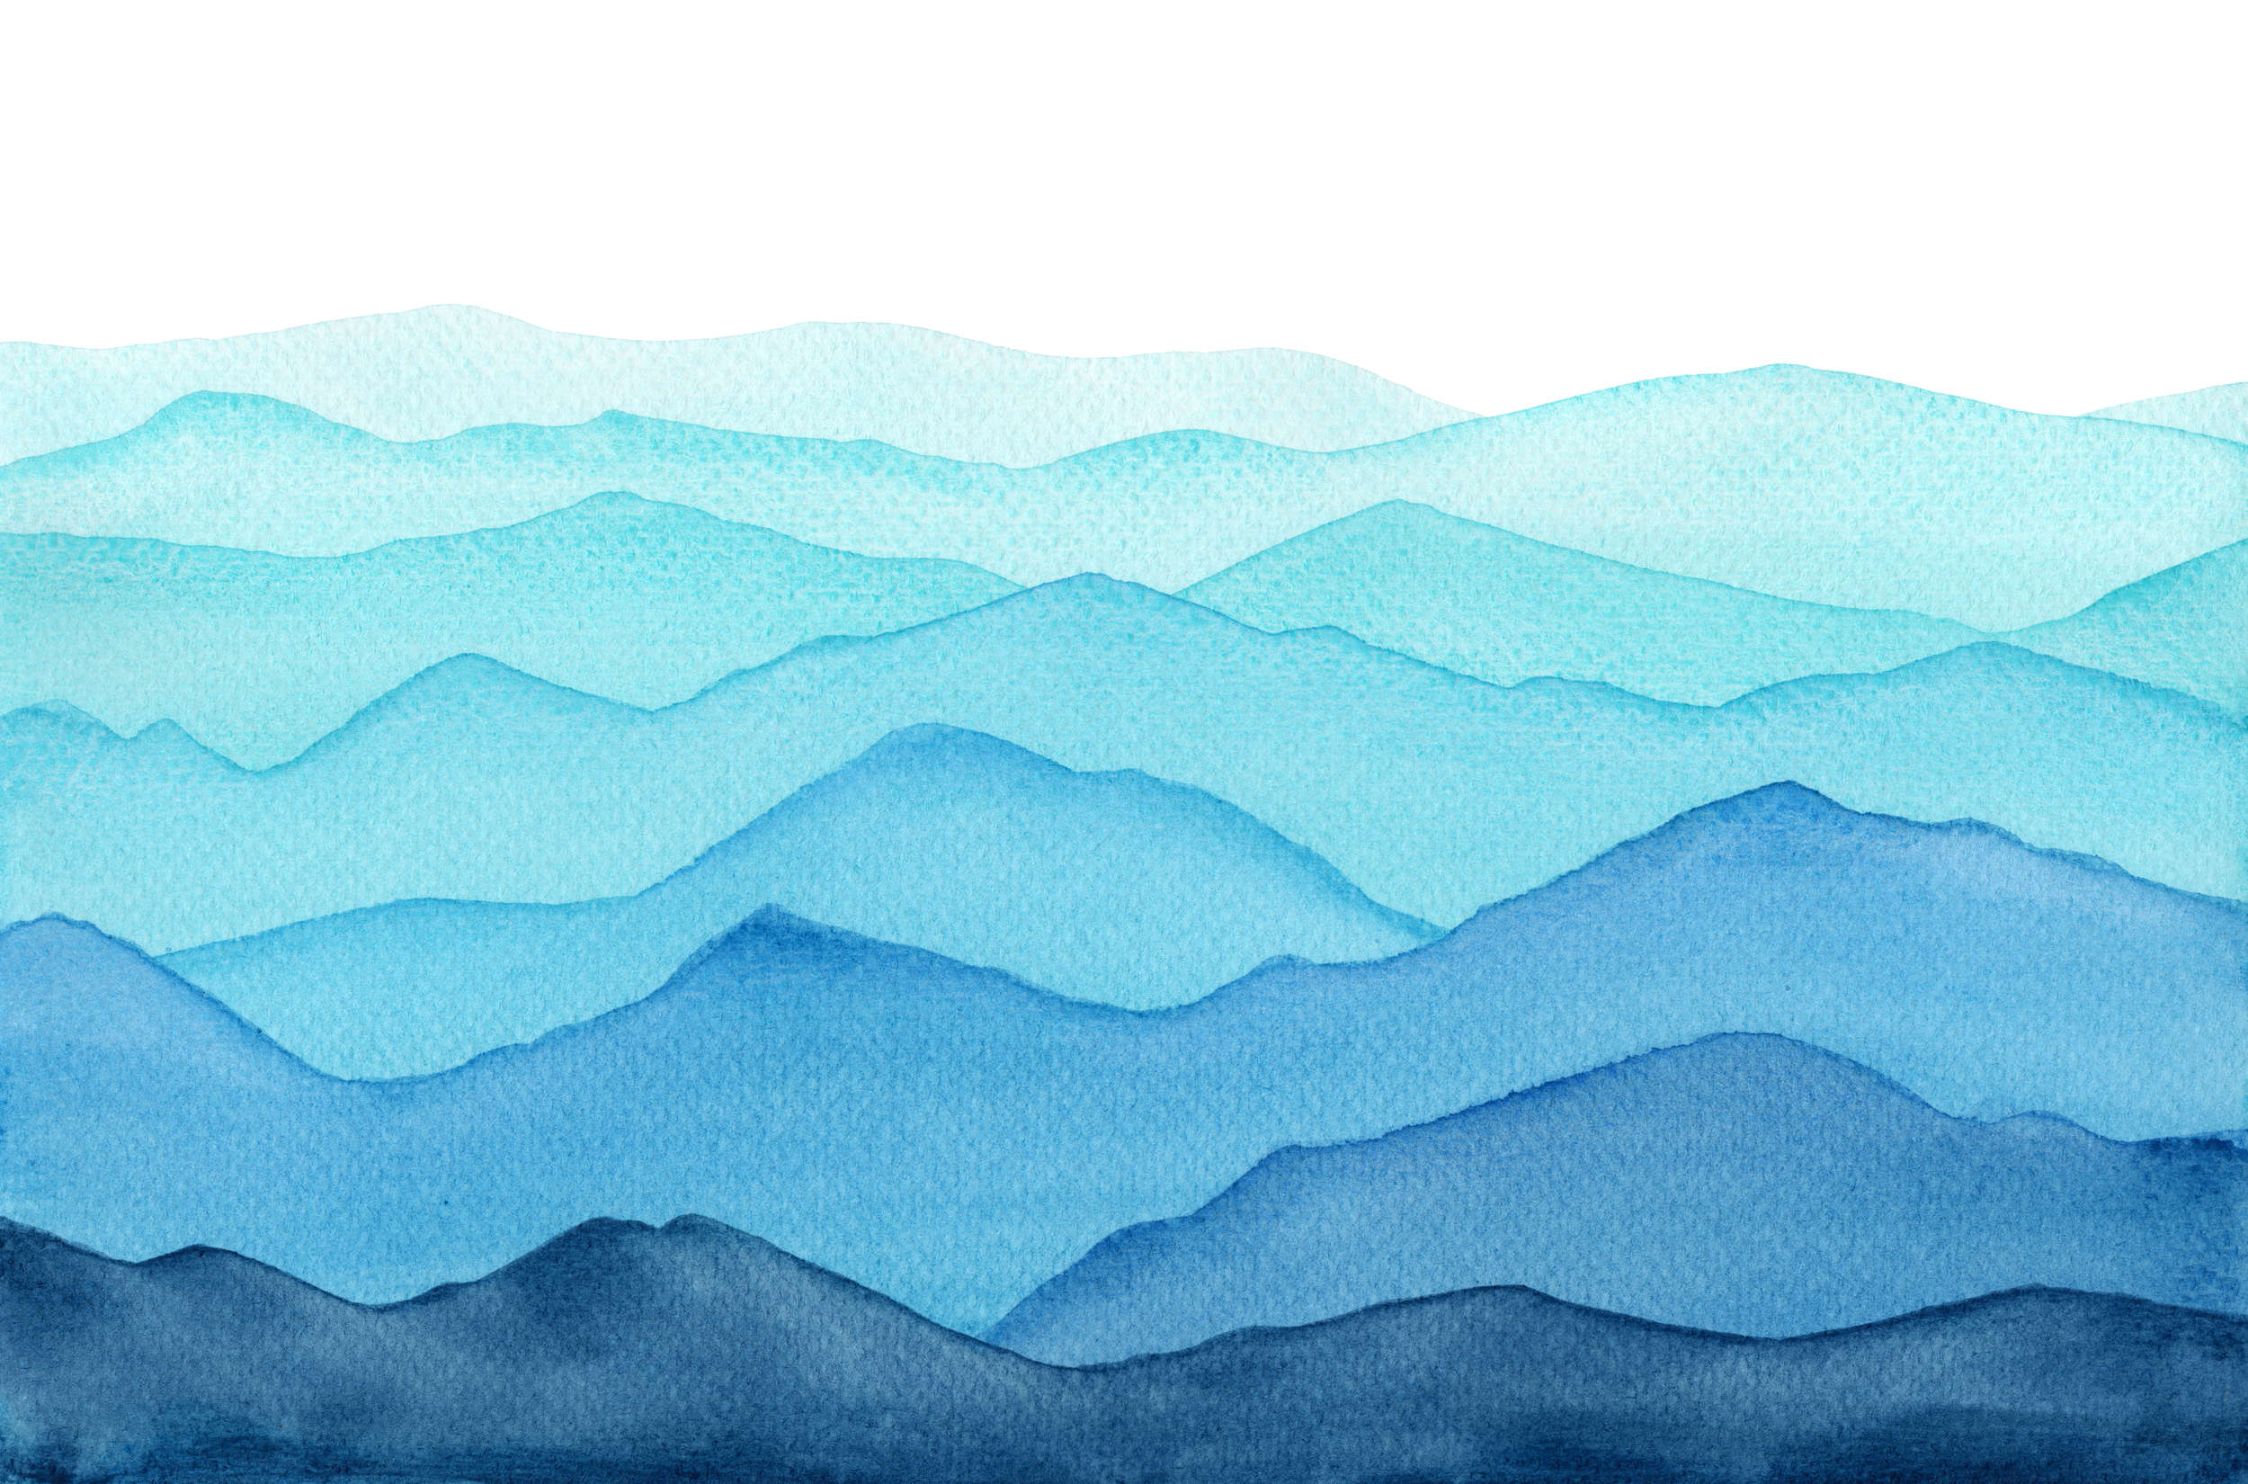             Fototapete Meer mit Wellen in aquarell – Glattes & leicht glänzendes Vlies
        